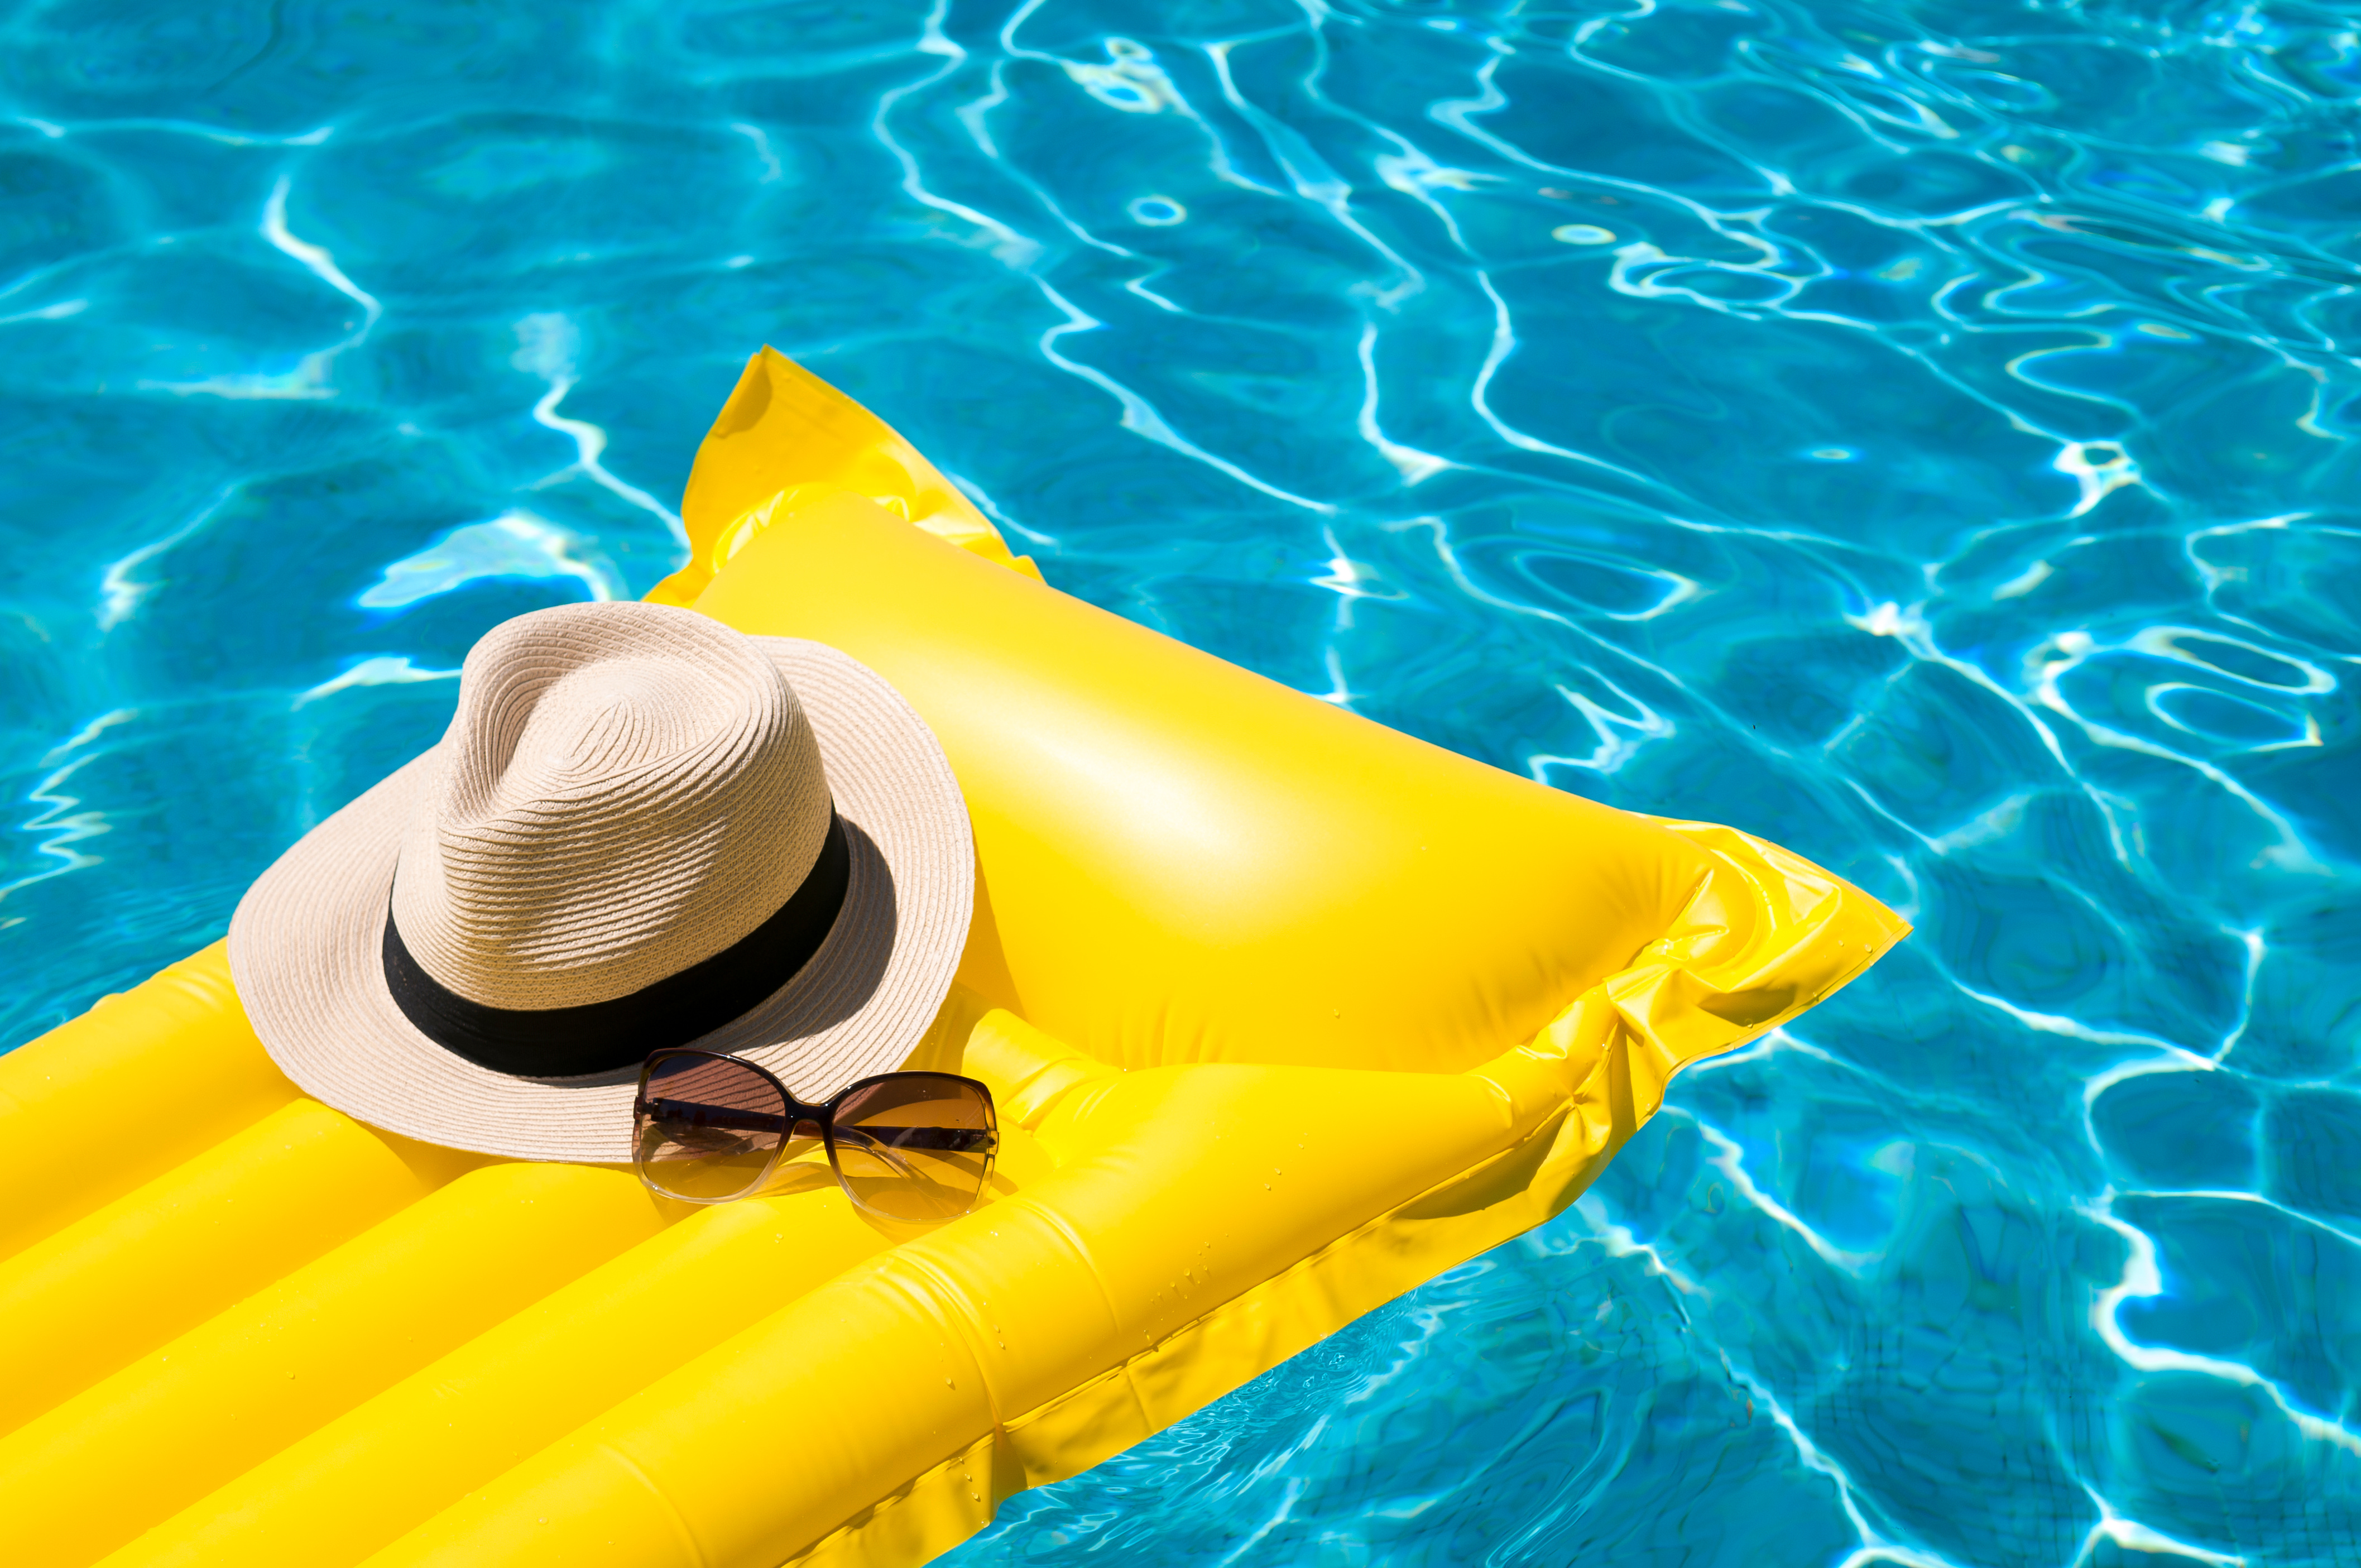 Les meilleures offres de piscine sont à saisir lors du Prime Day Amazon © PeskyMonkey, Adobe Stock